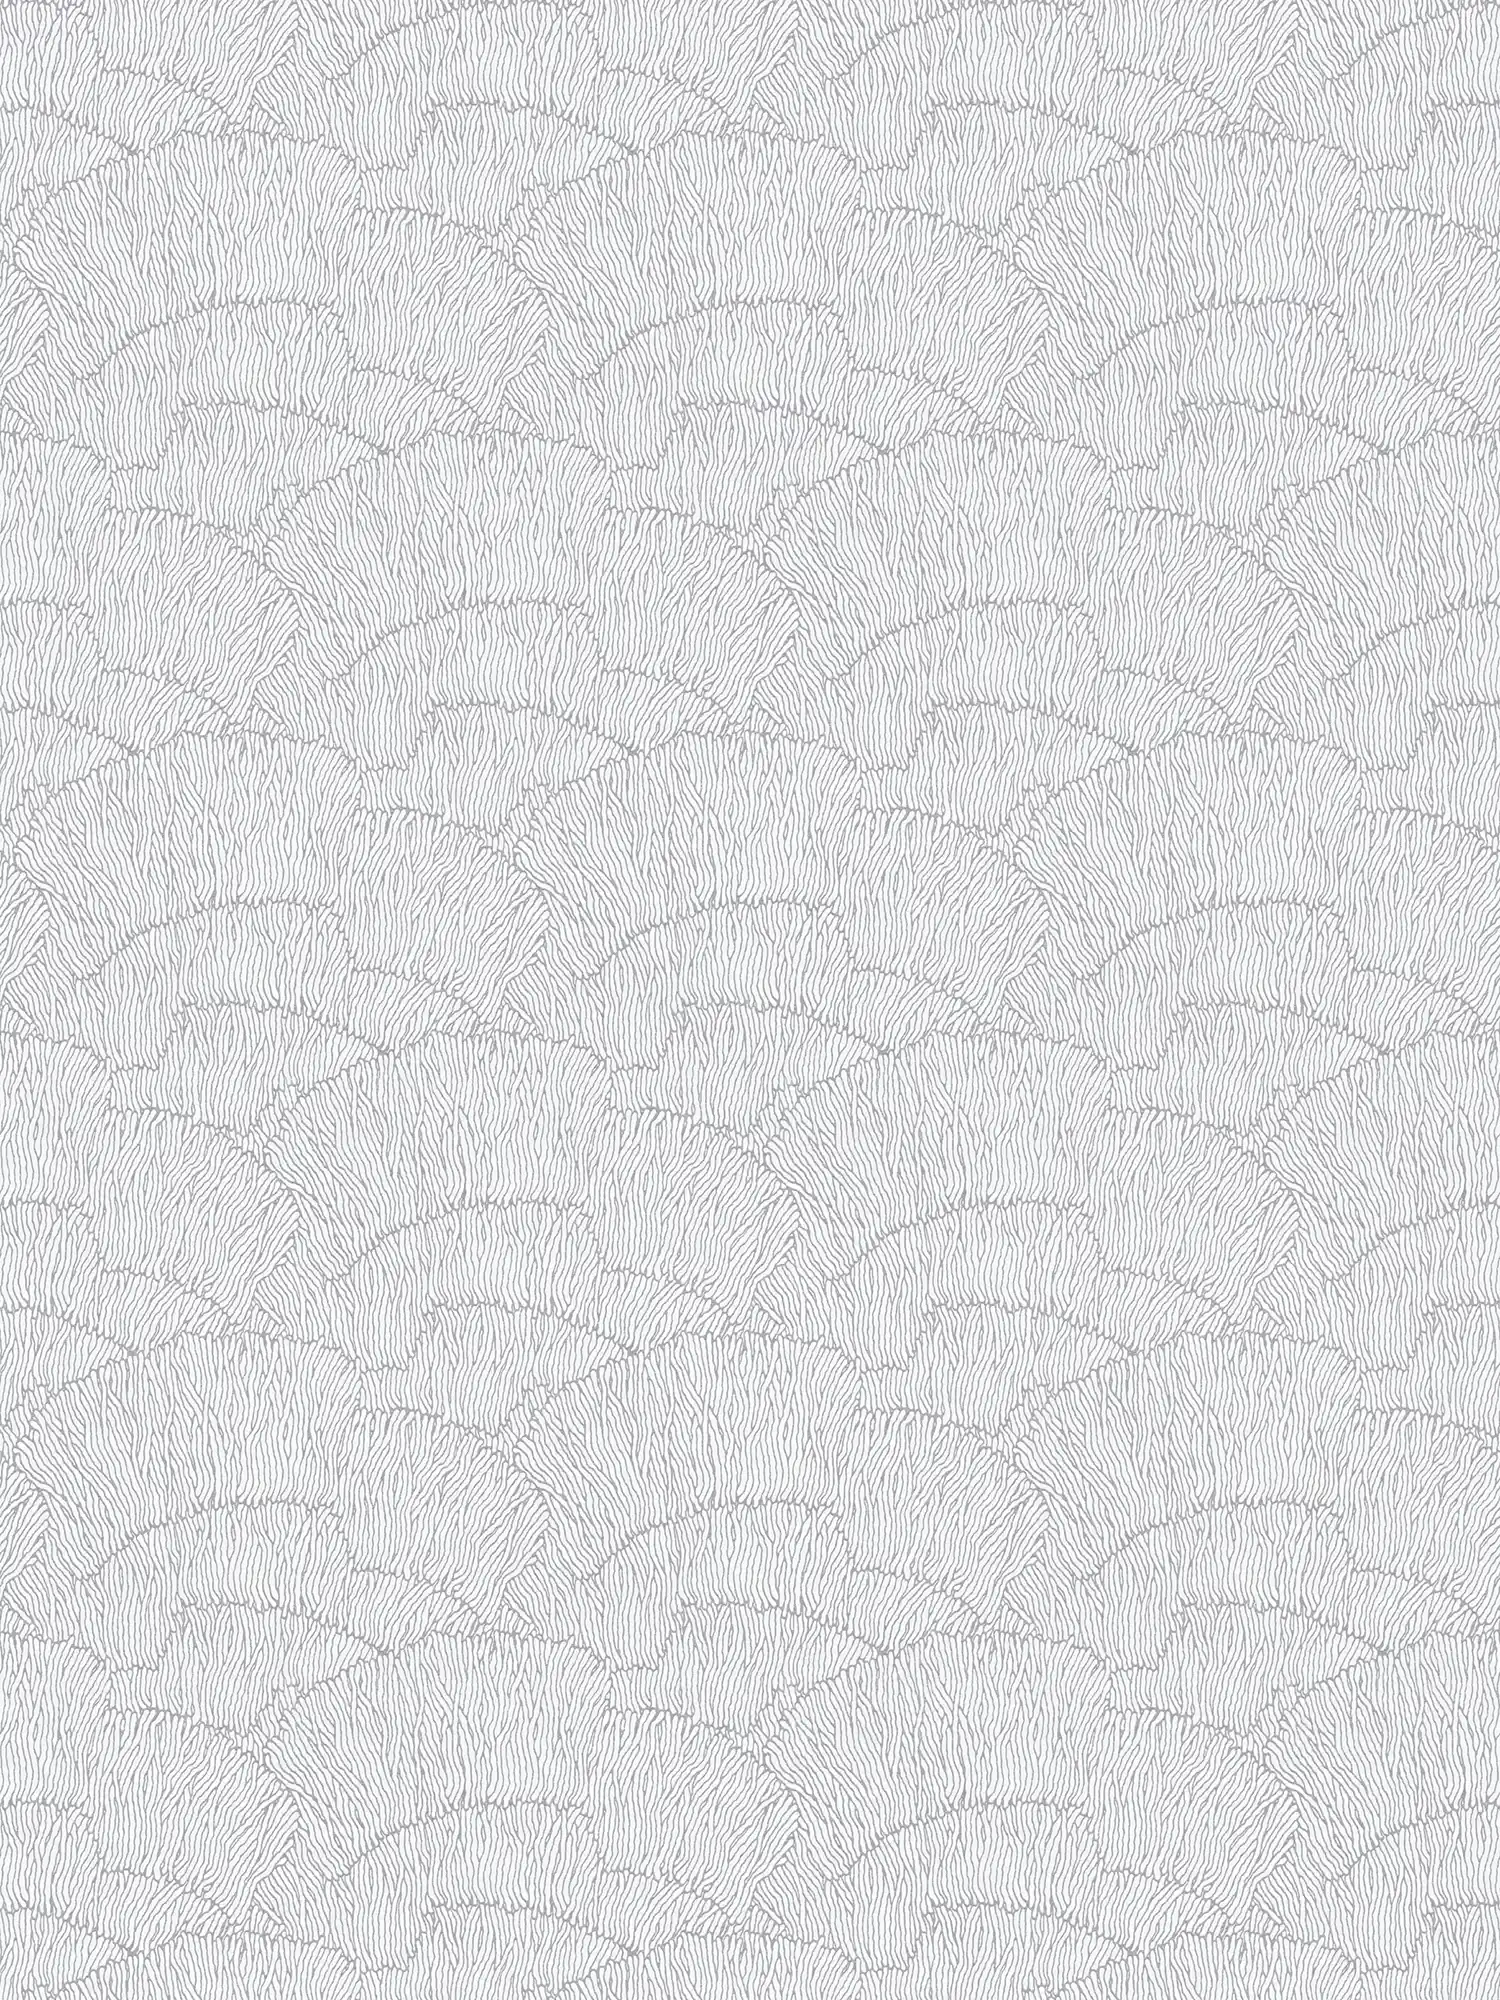 Vliestapete mit abstrakten Muster – Silber, Weiß, Metallic
